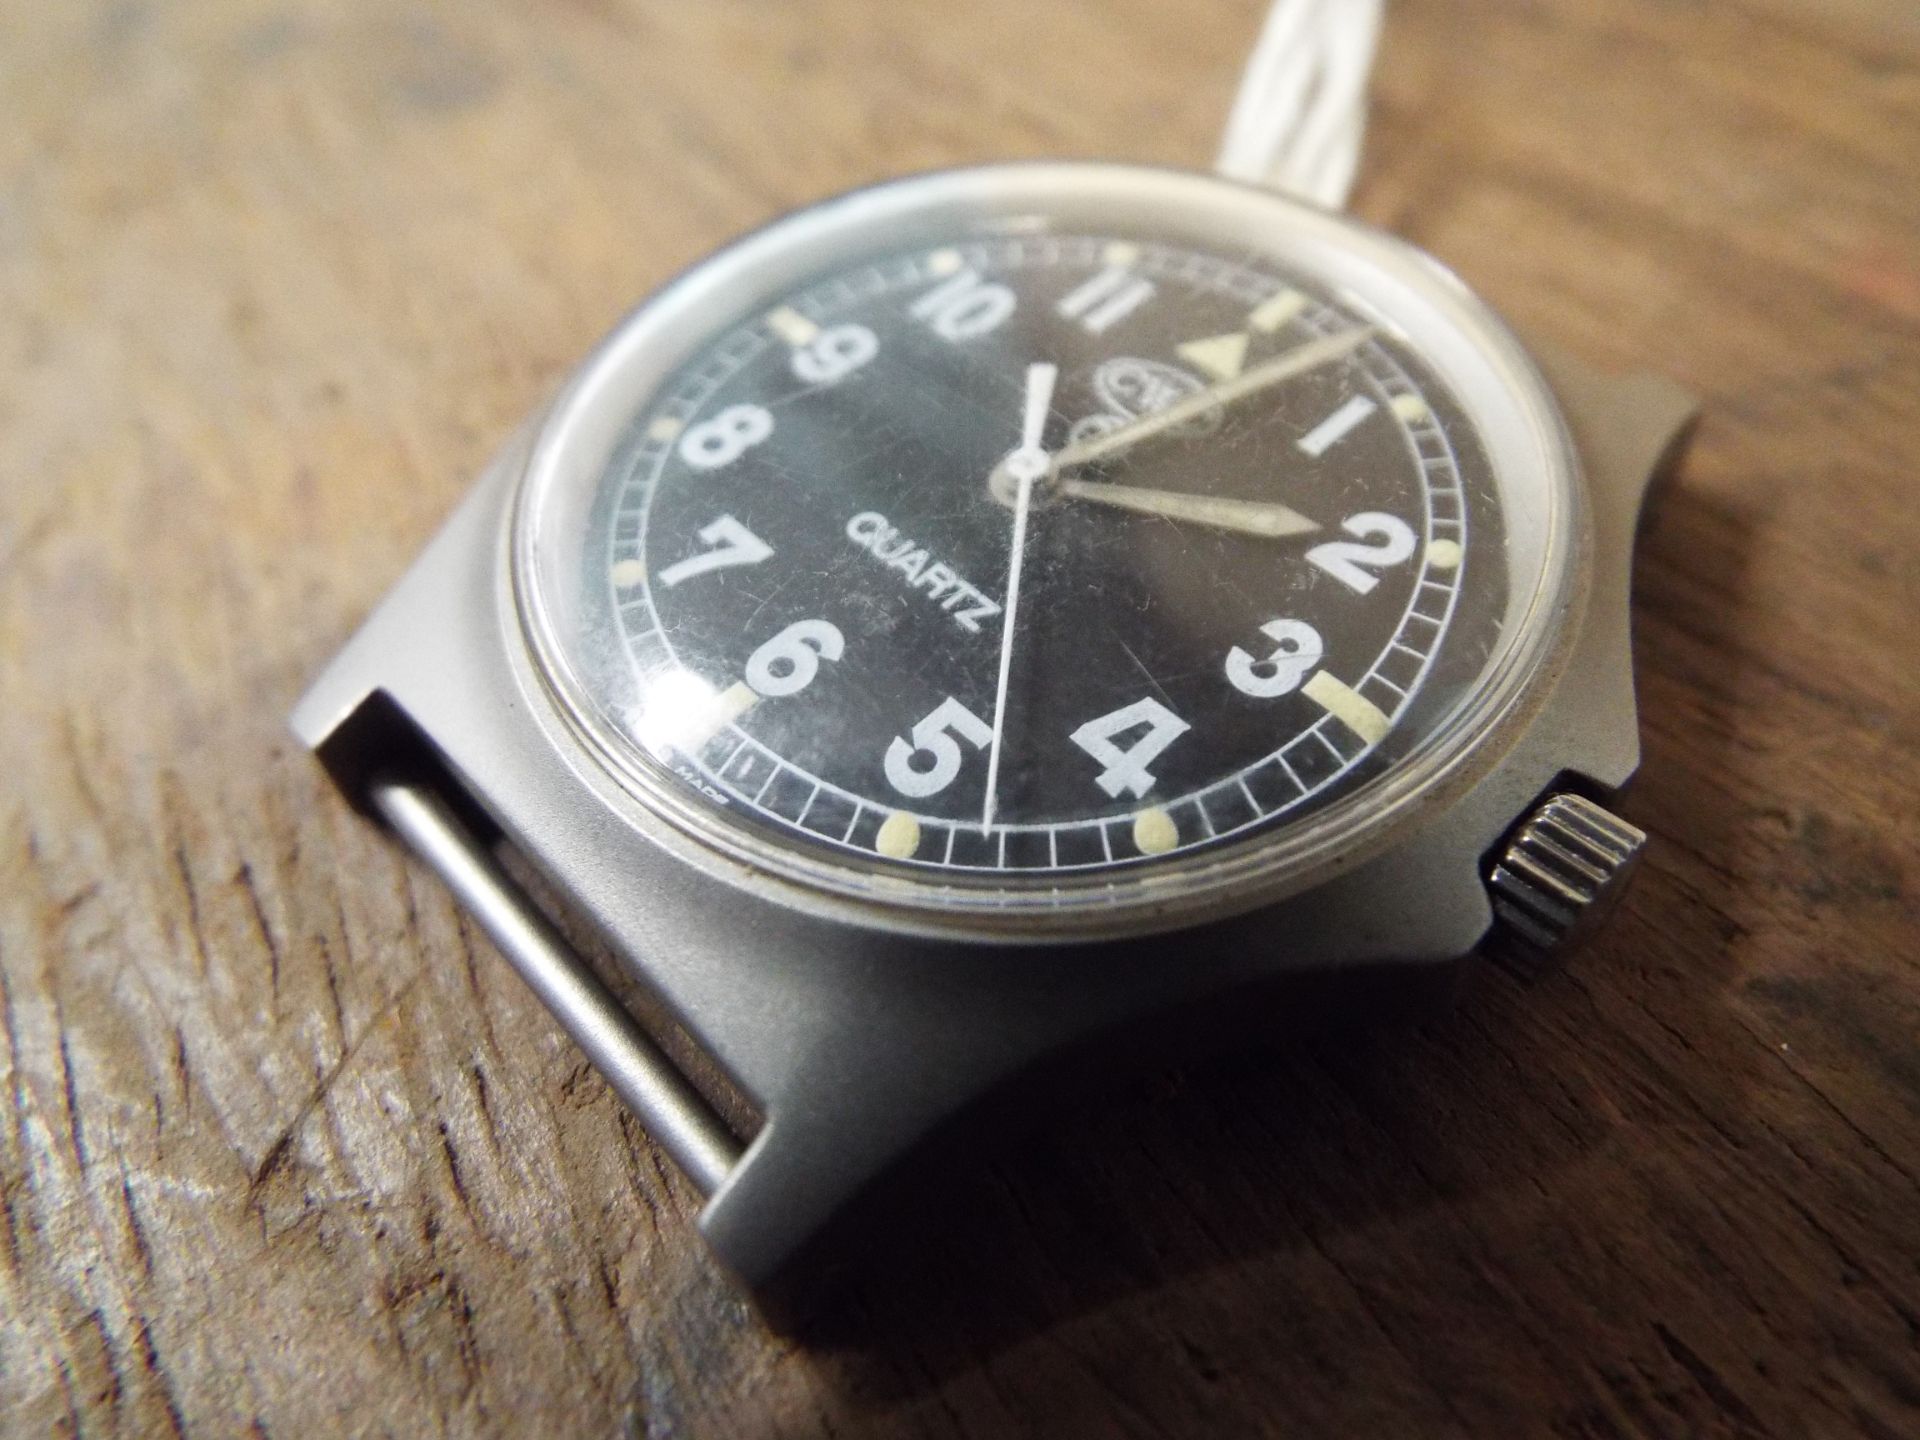 Genuine British Army,CWC quartz wrist watch - Bild 2 aus 4